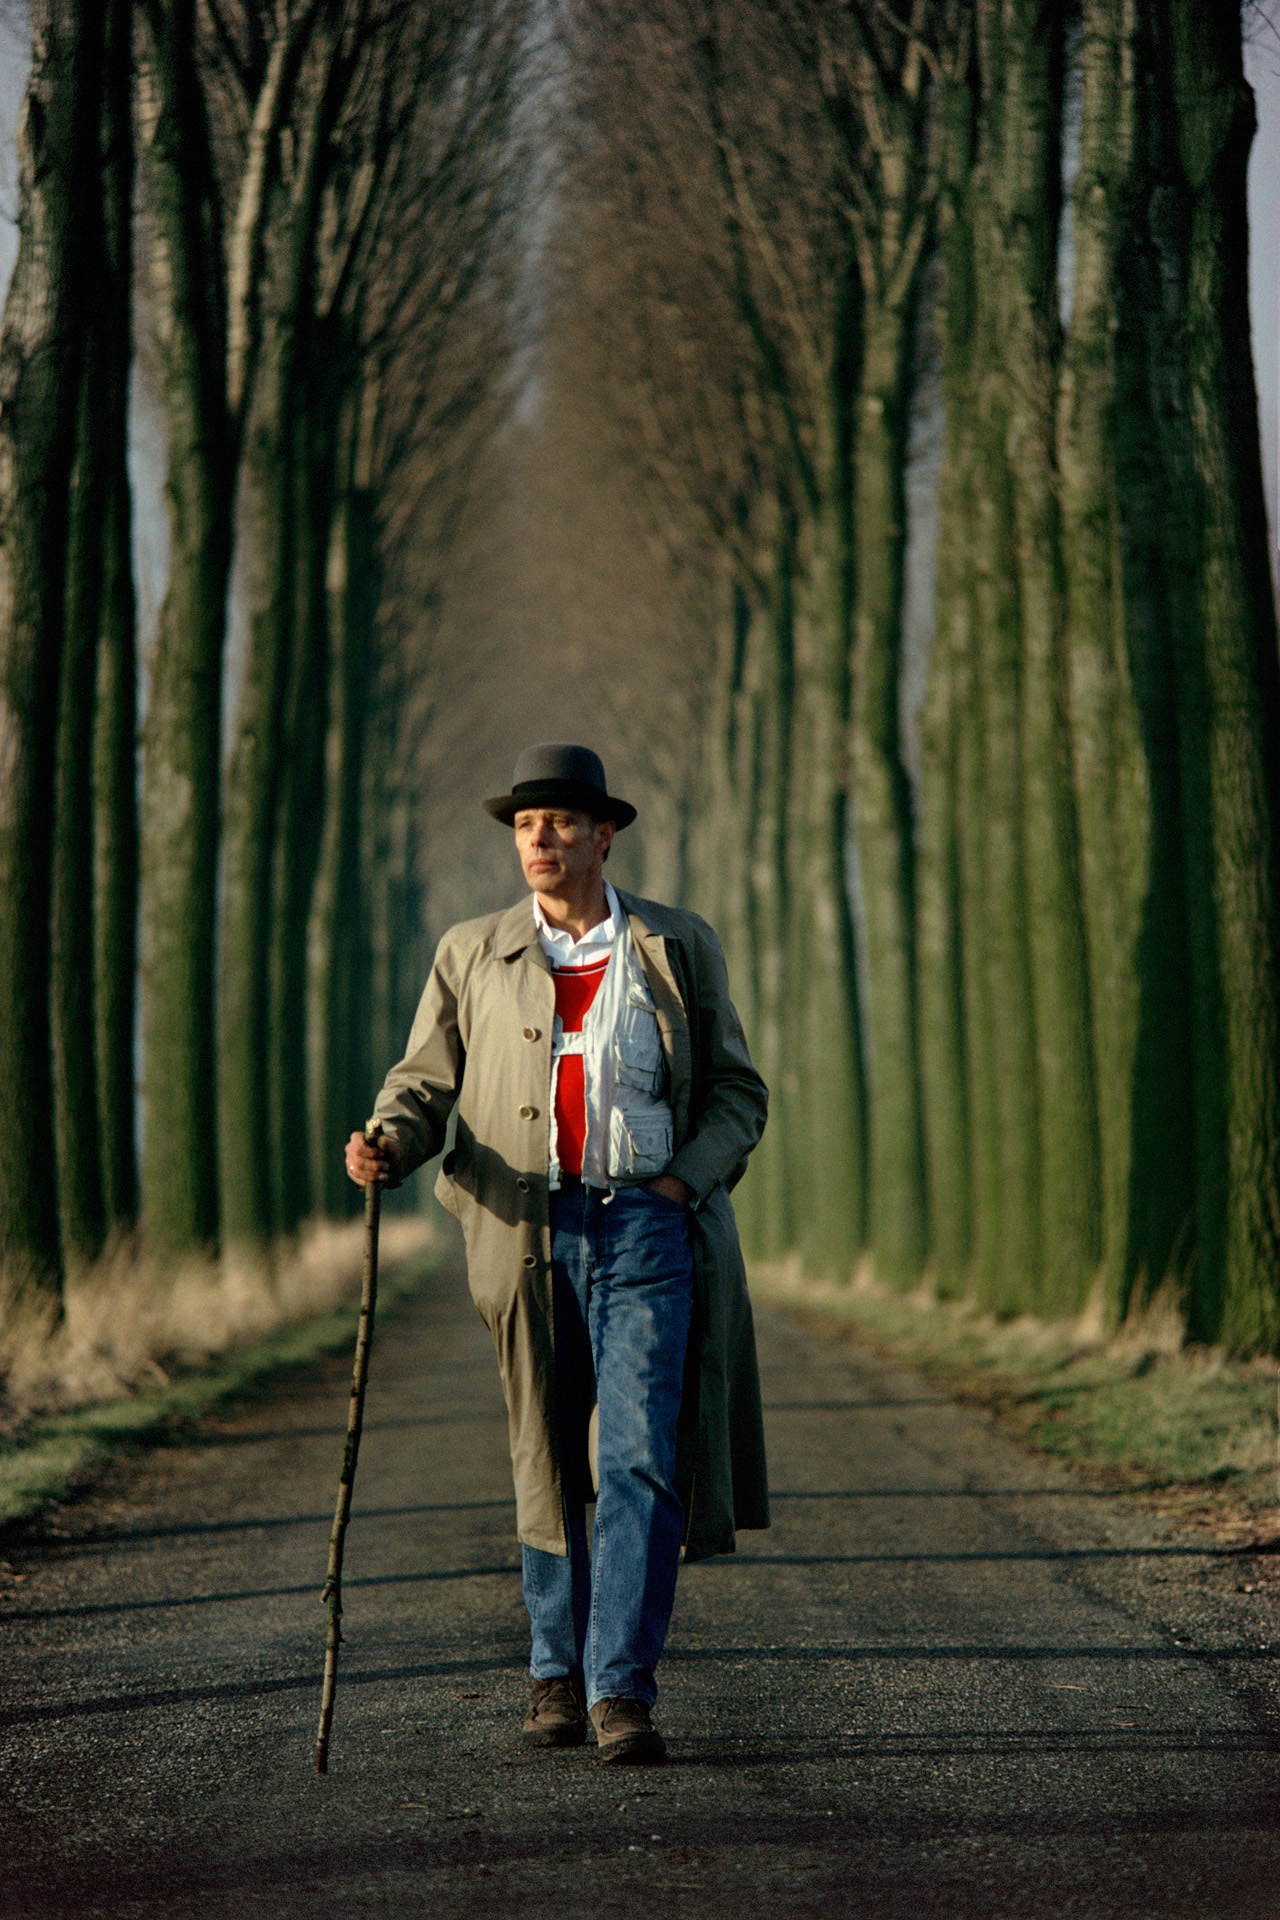  Joseph Beuys walks down an alley of poplar trees in the Düffel area 